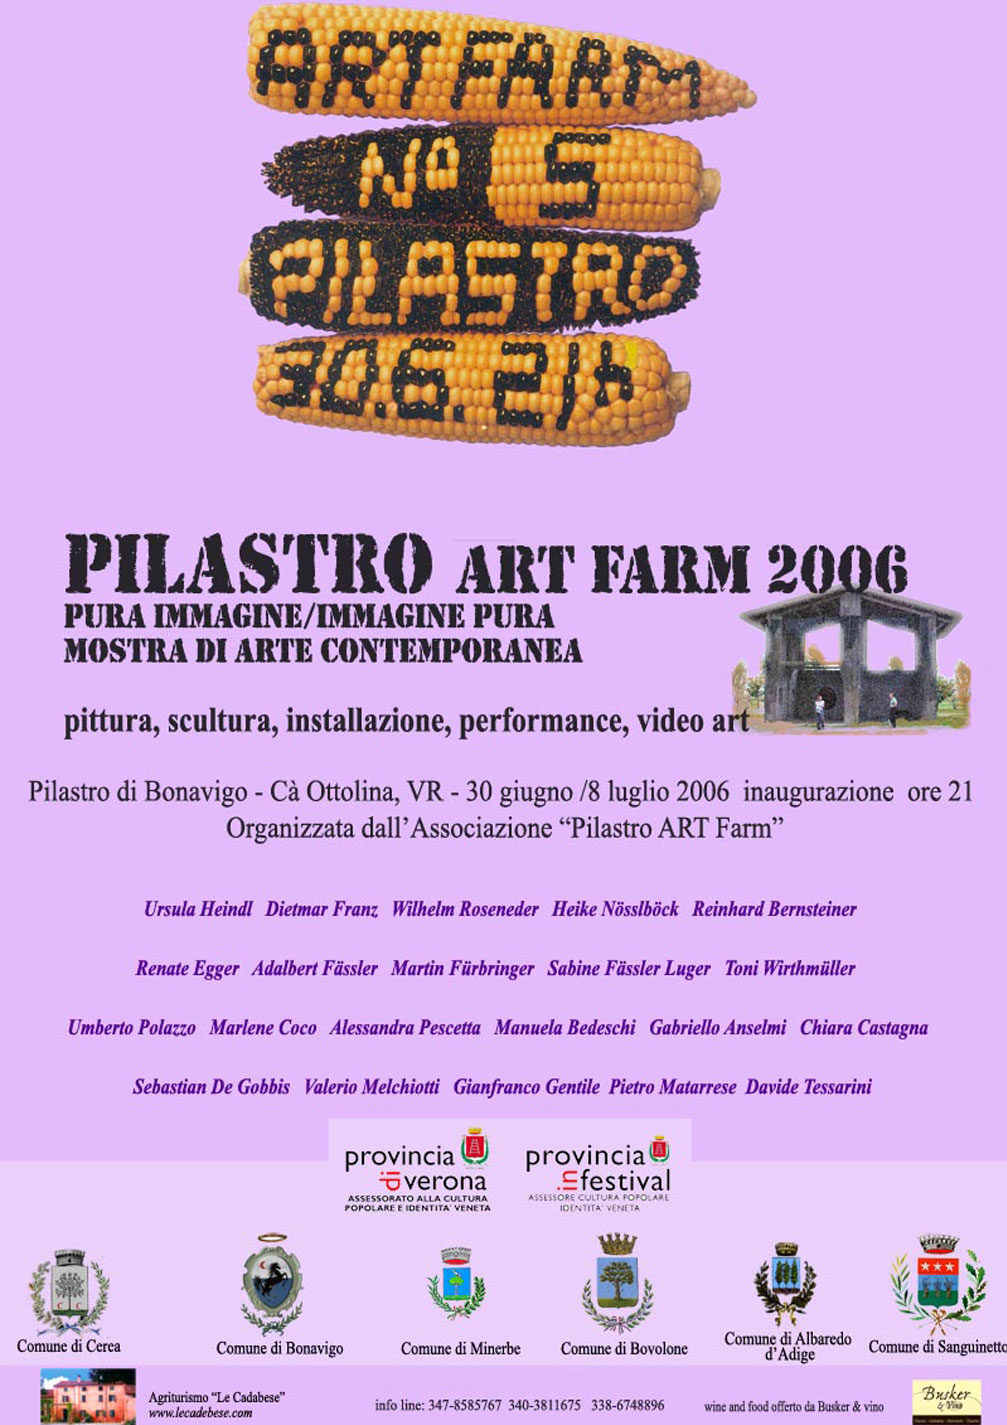 Pura immagine immagine pura - Artfarm Pilastro -2006